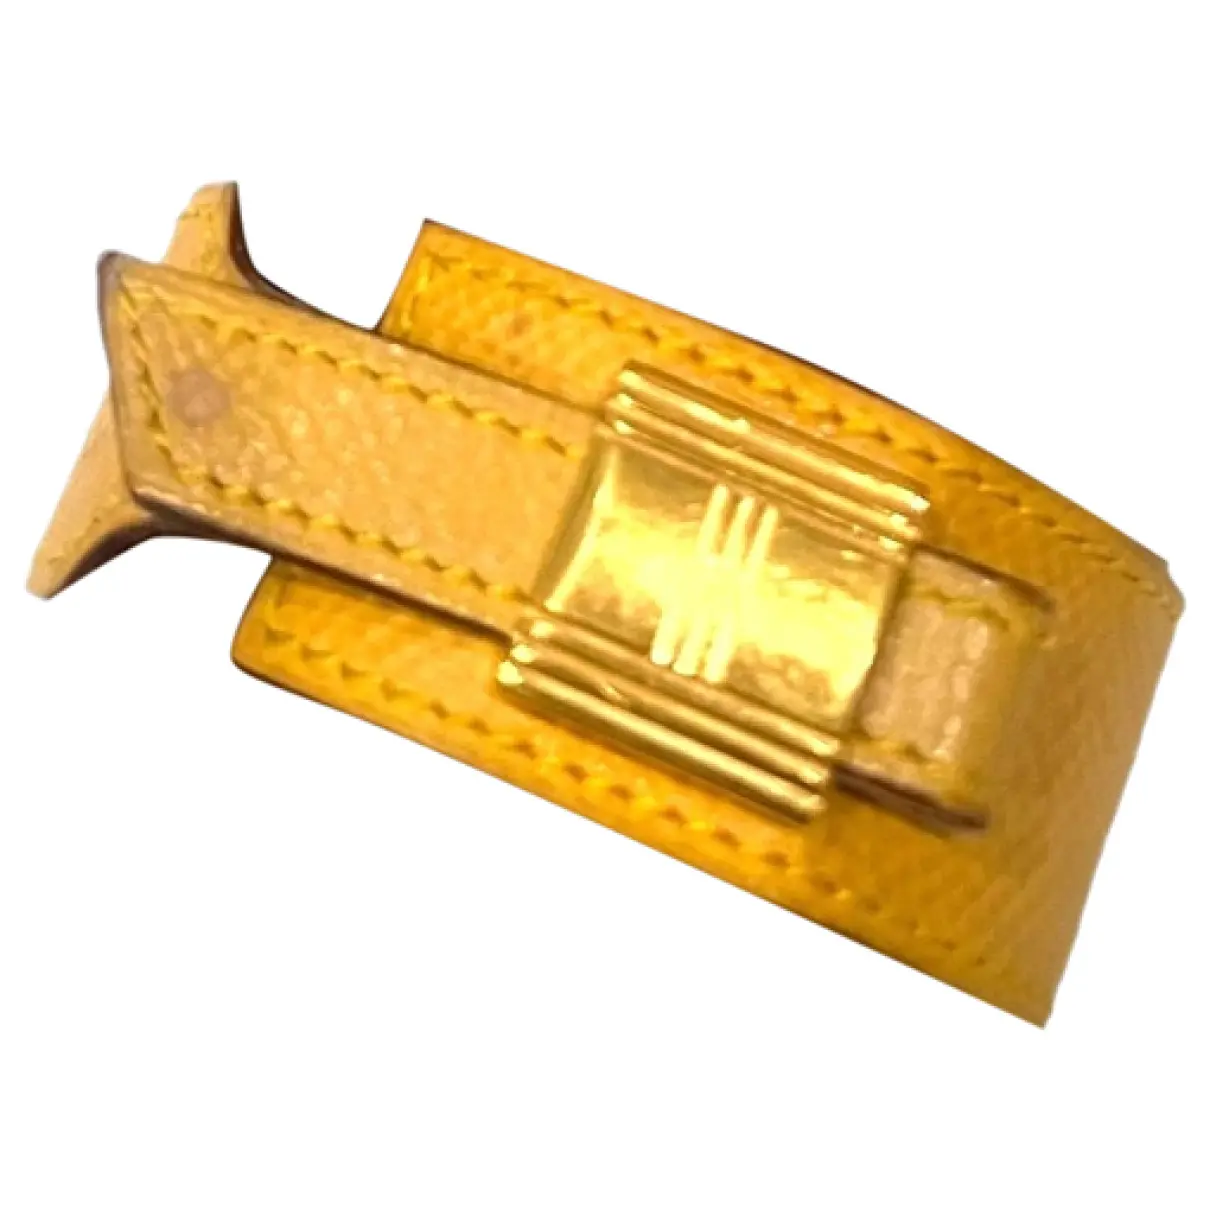 Artemis leather bracelet